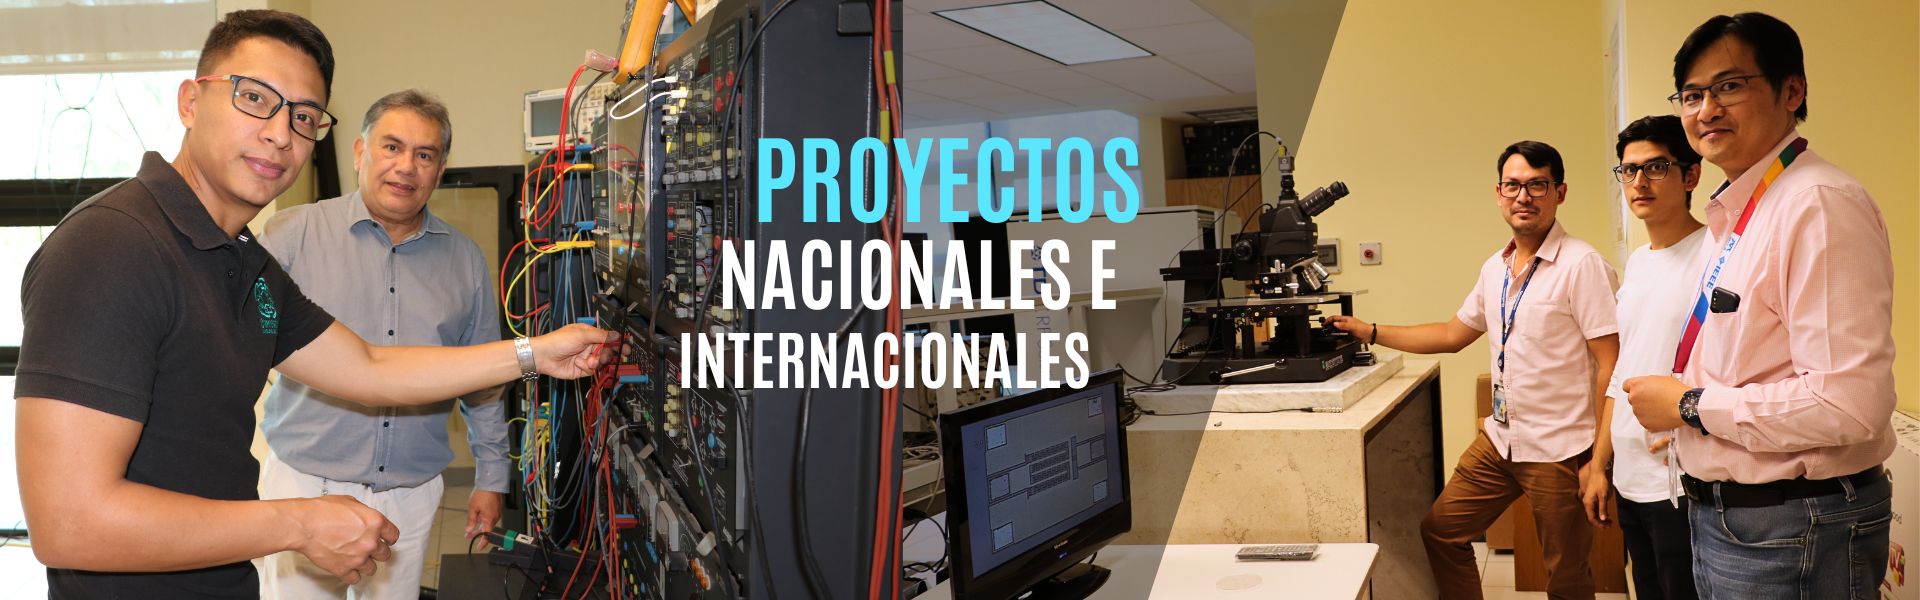 Banner - Proyectos Nacionales e Internacionales